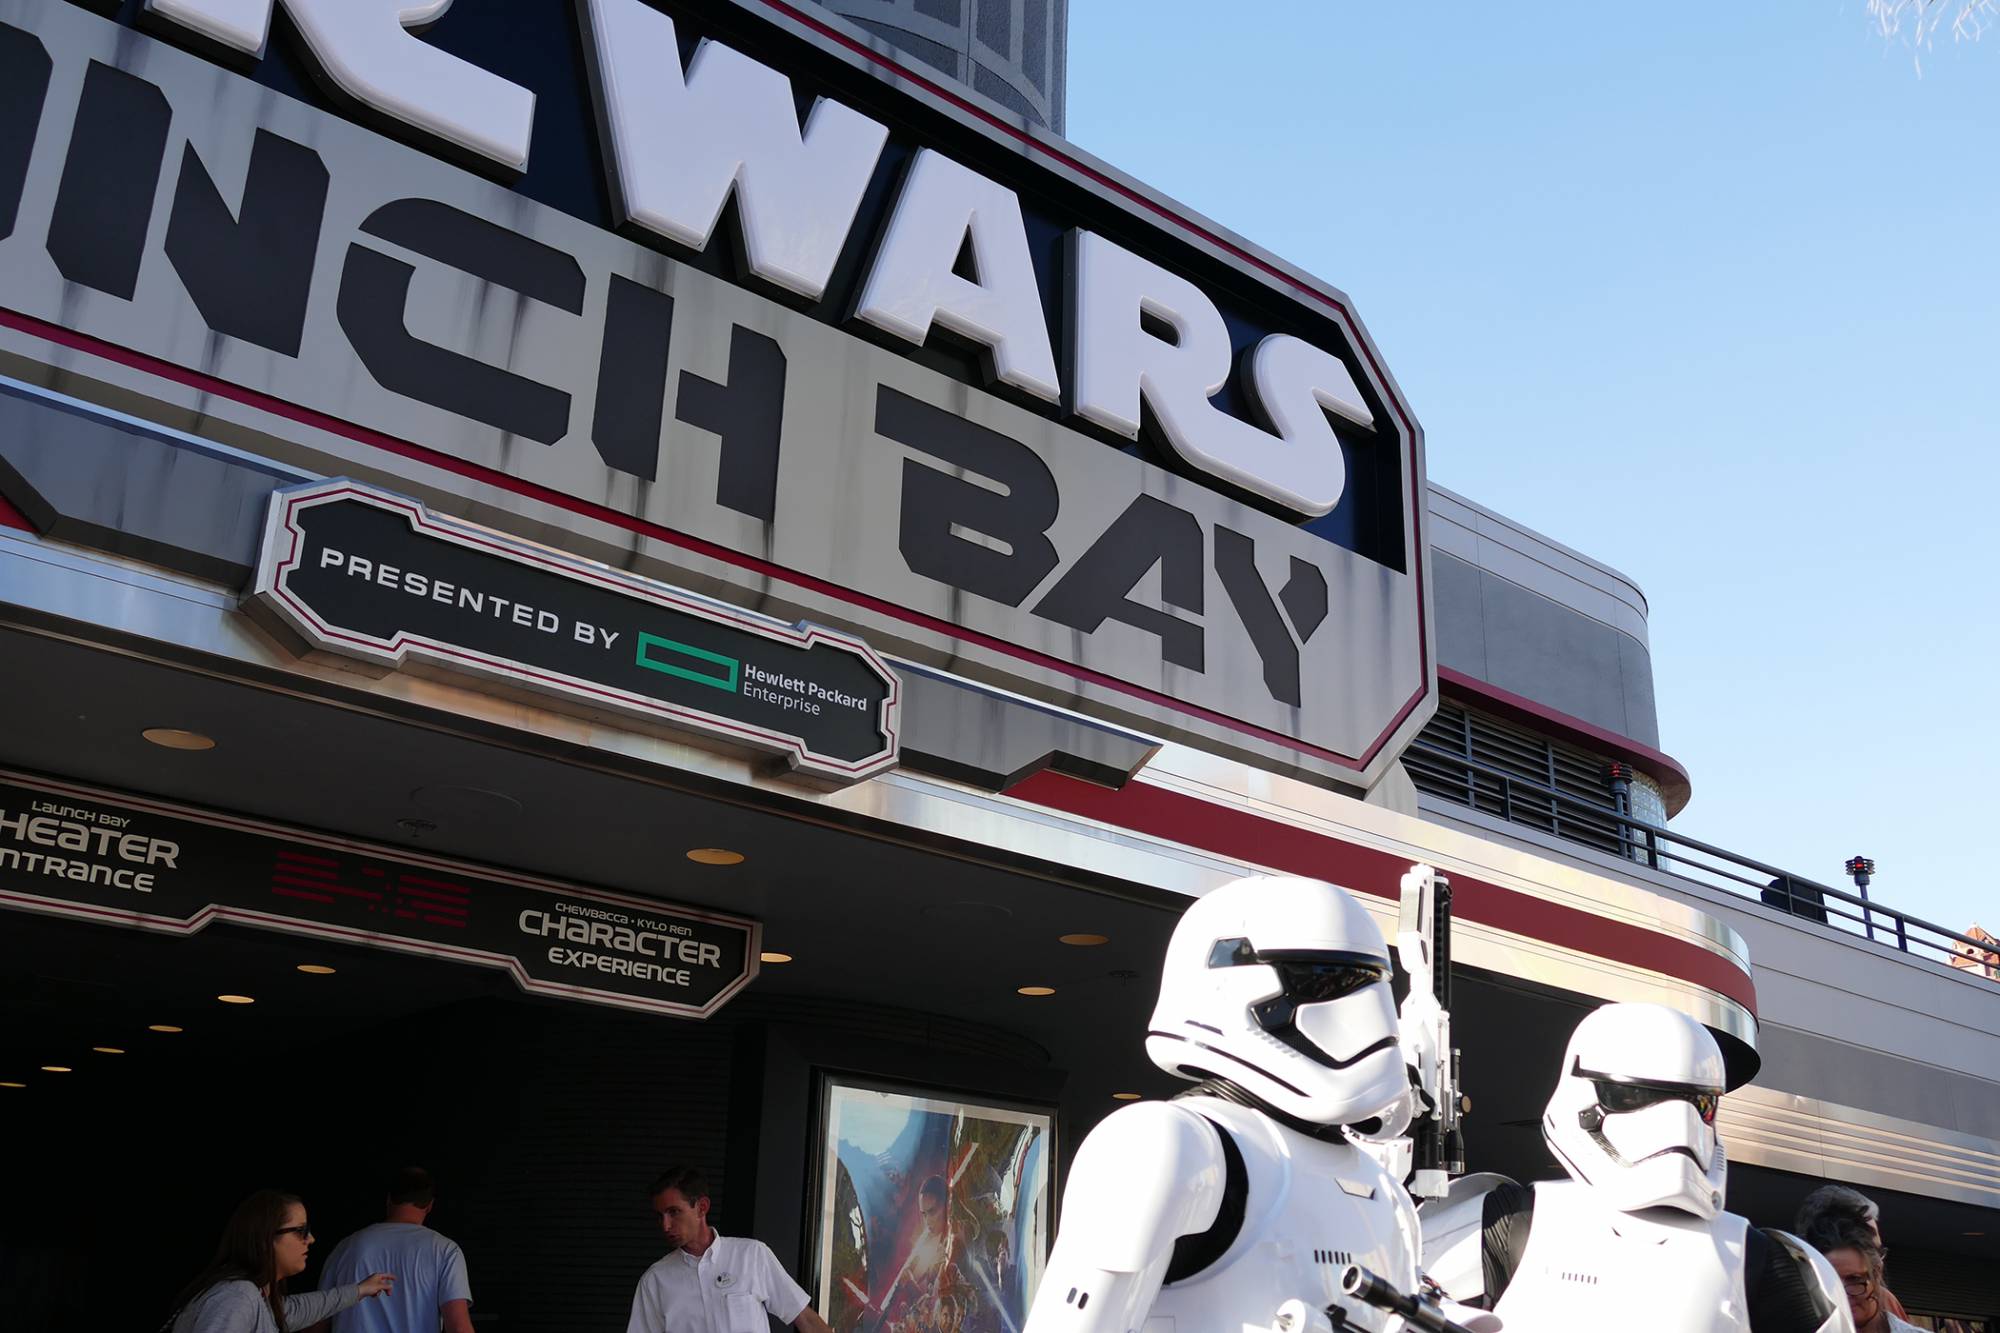 Visit a galaxy far, far, away at Star Wars Launch Bay at Hollywood Studios | PassPorter.com